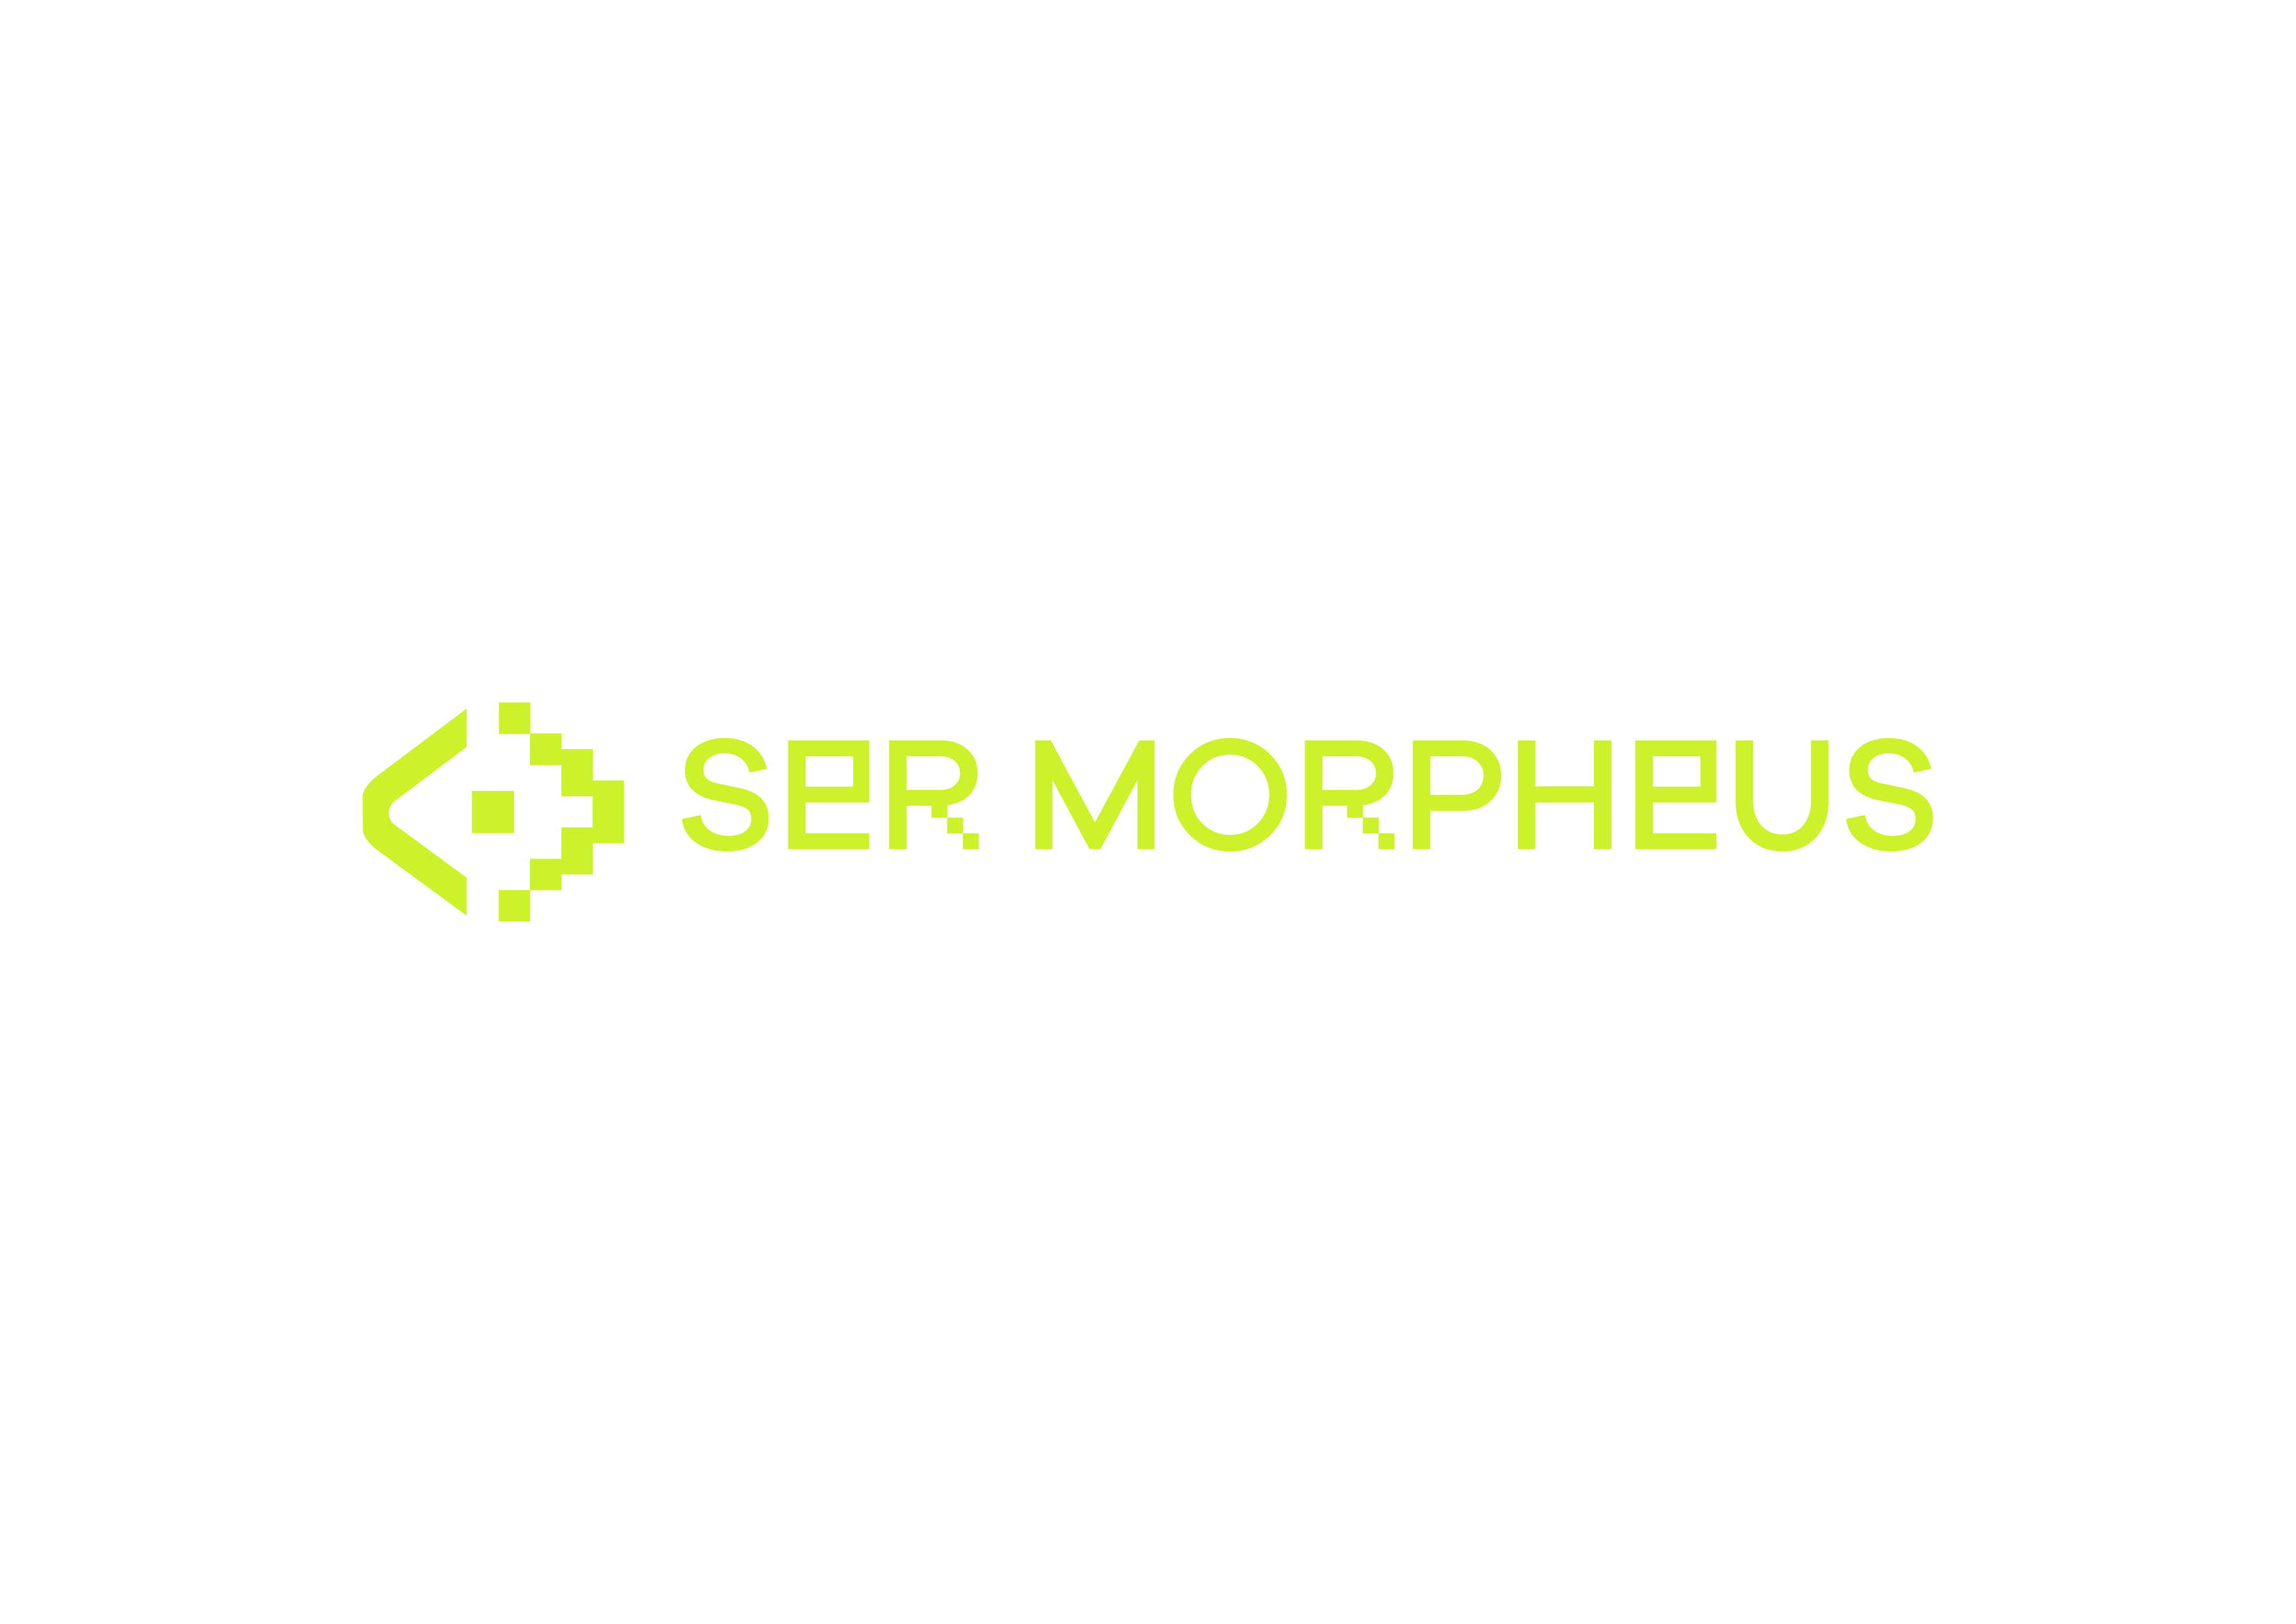 Sermorpheus